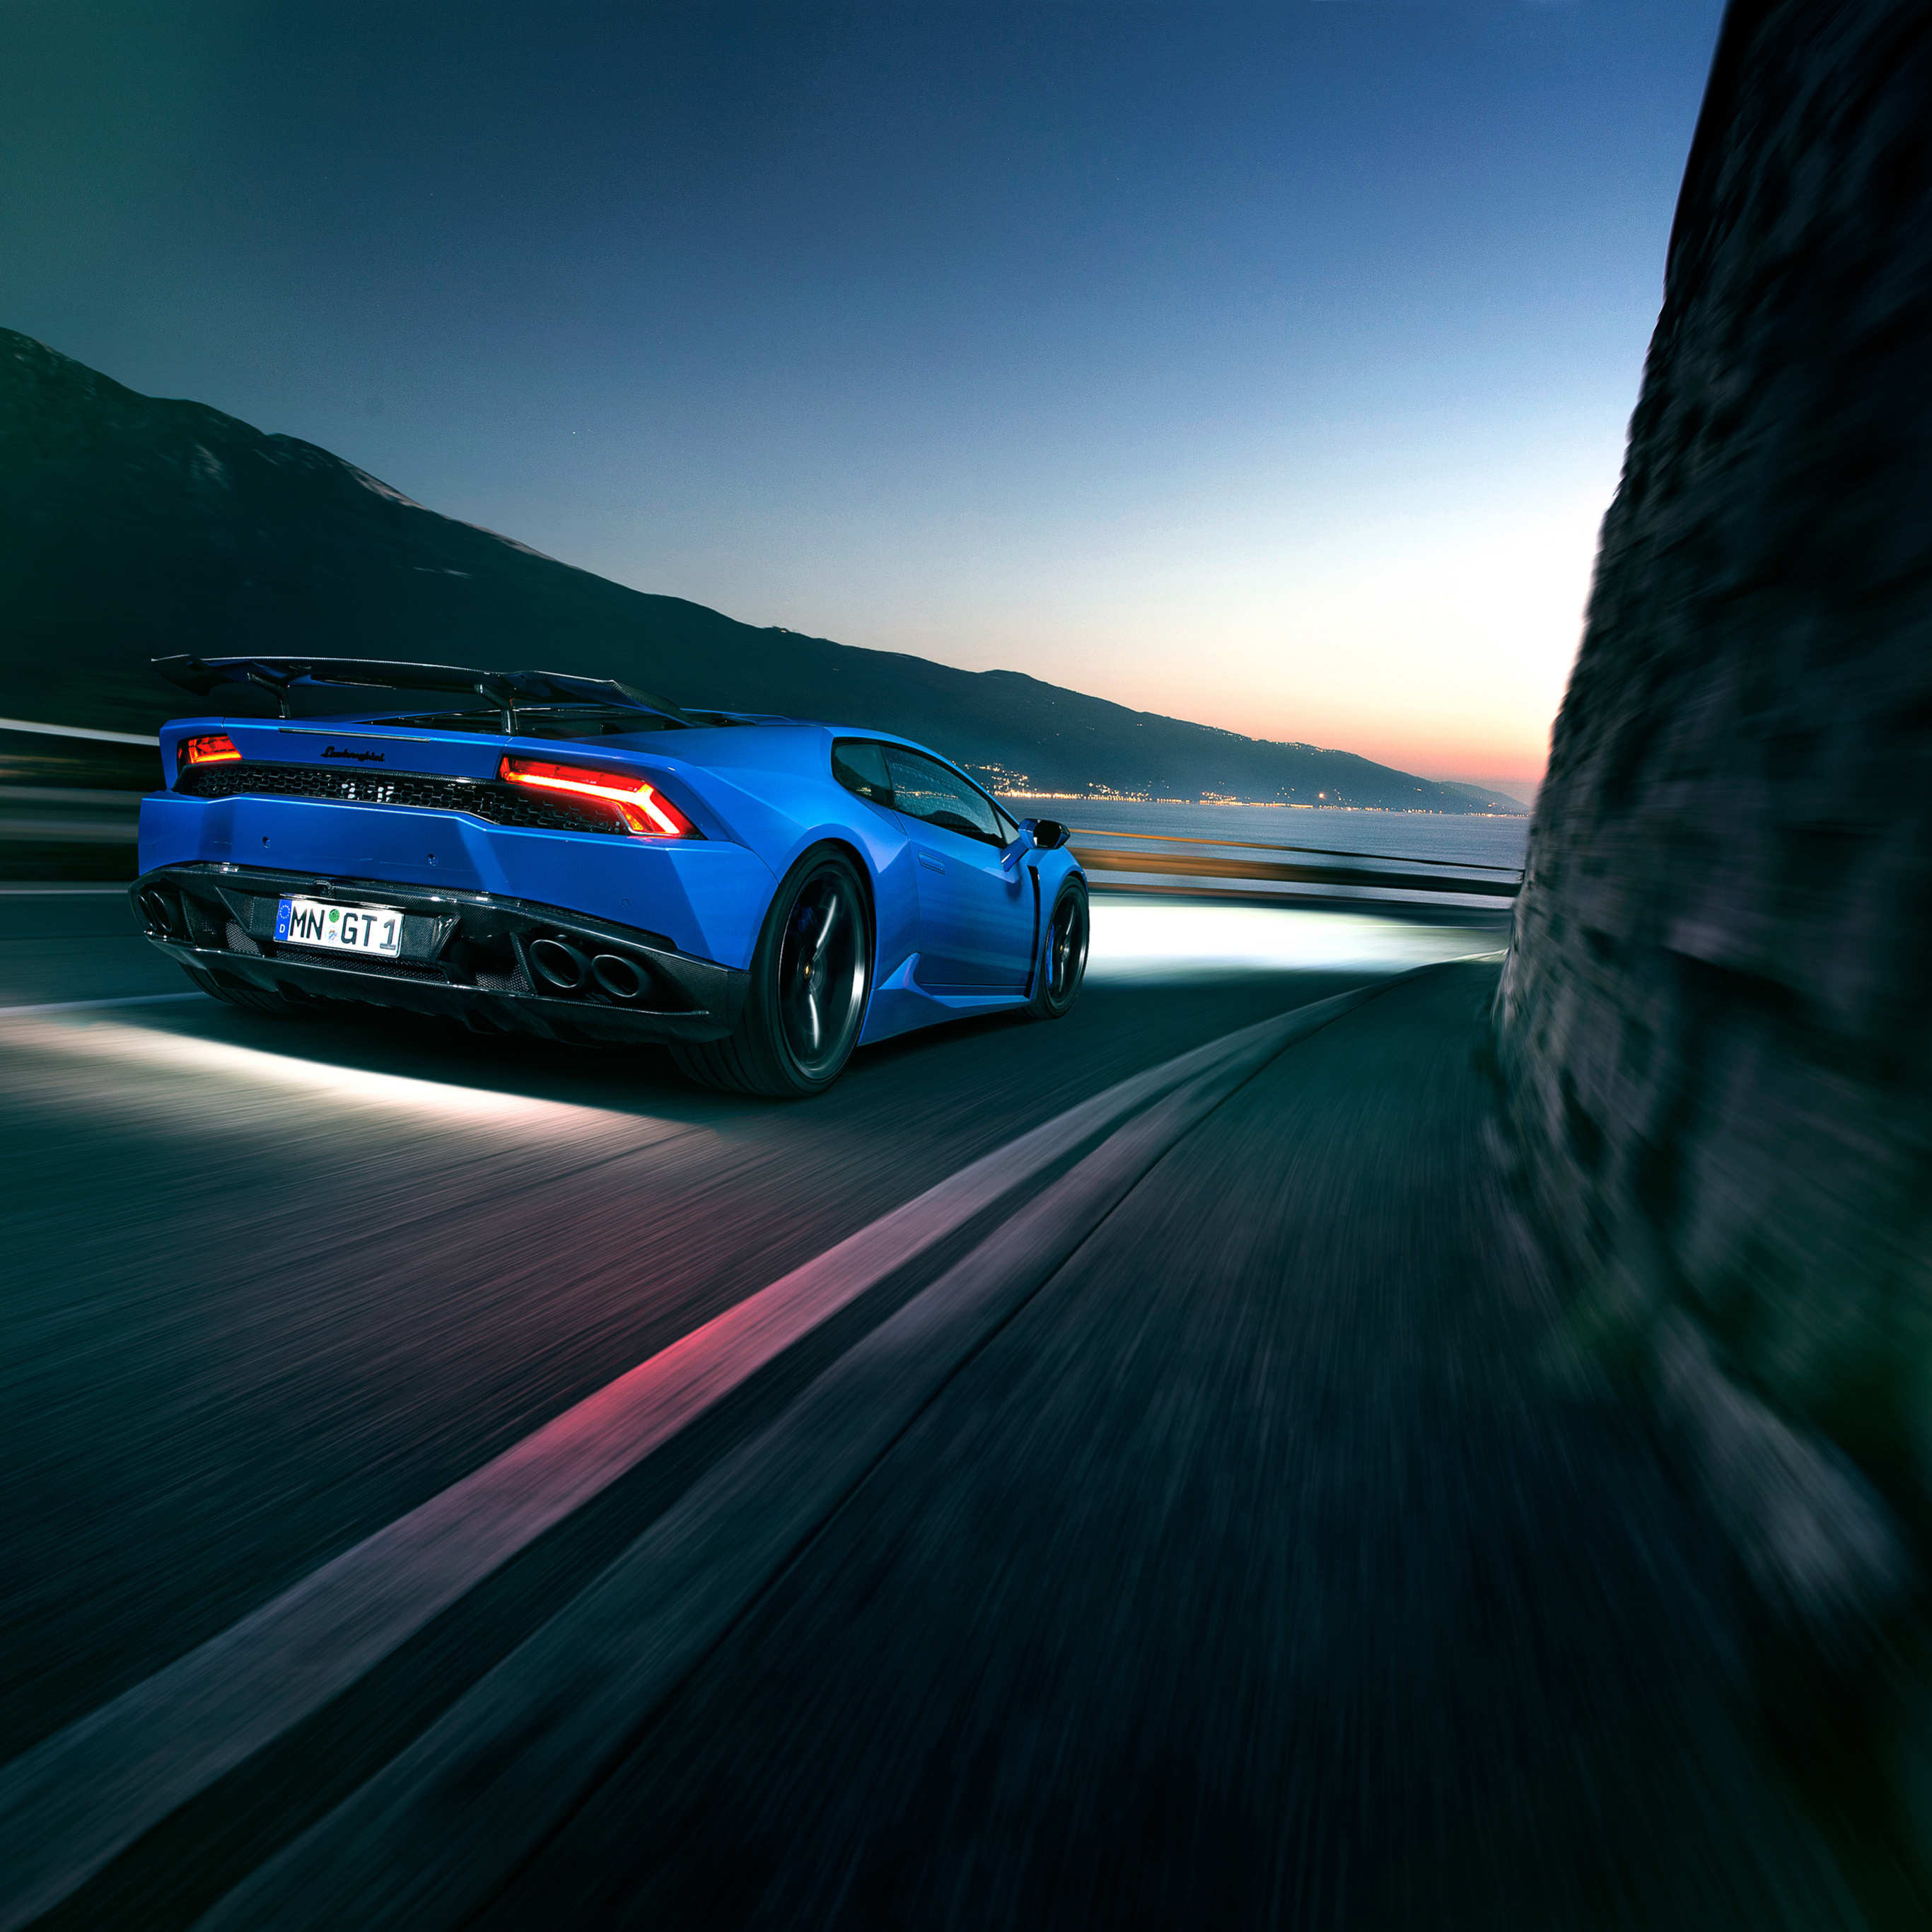 Descarga gratuita de fondo de pantalla para móvil de Lamborghini, Coche, Superdeportivo, Lamborghini Huracán, Vehículo, Vehículos.